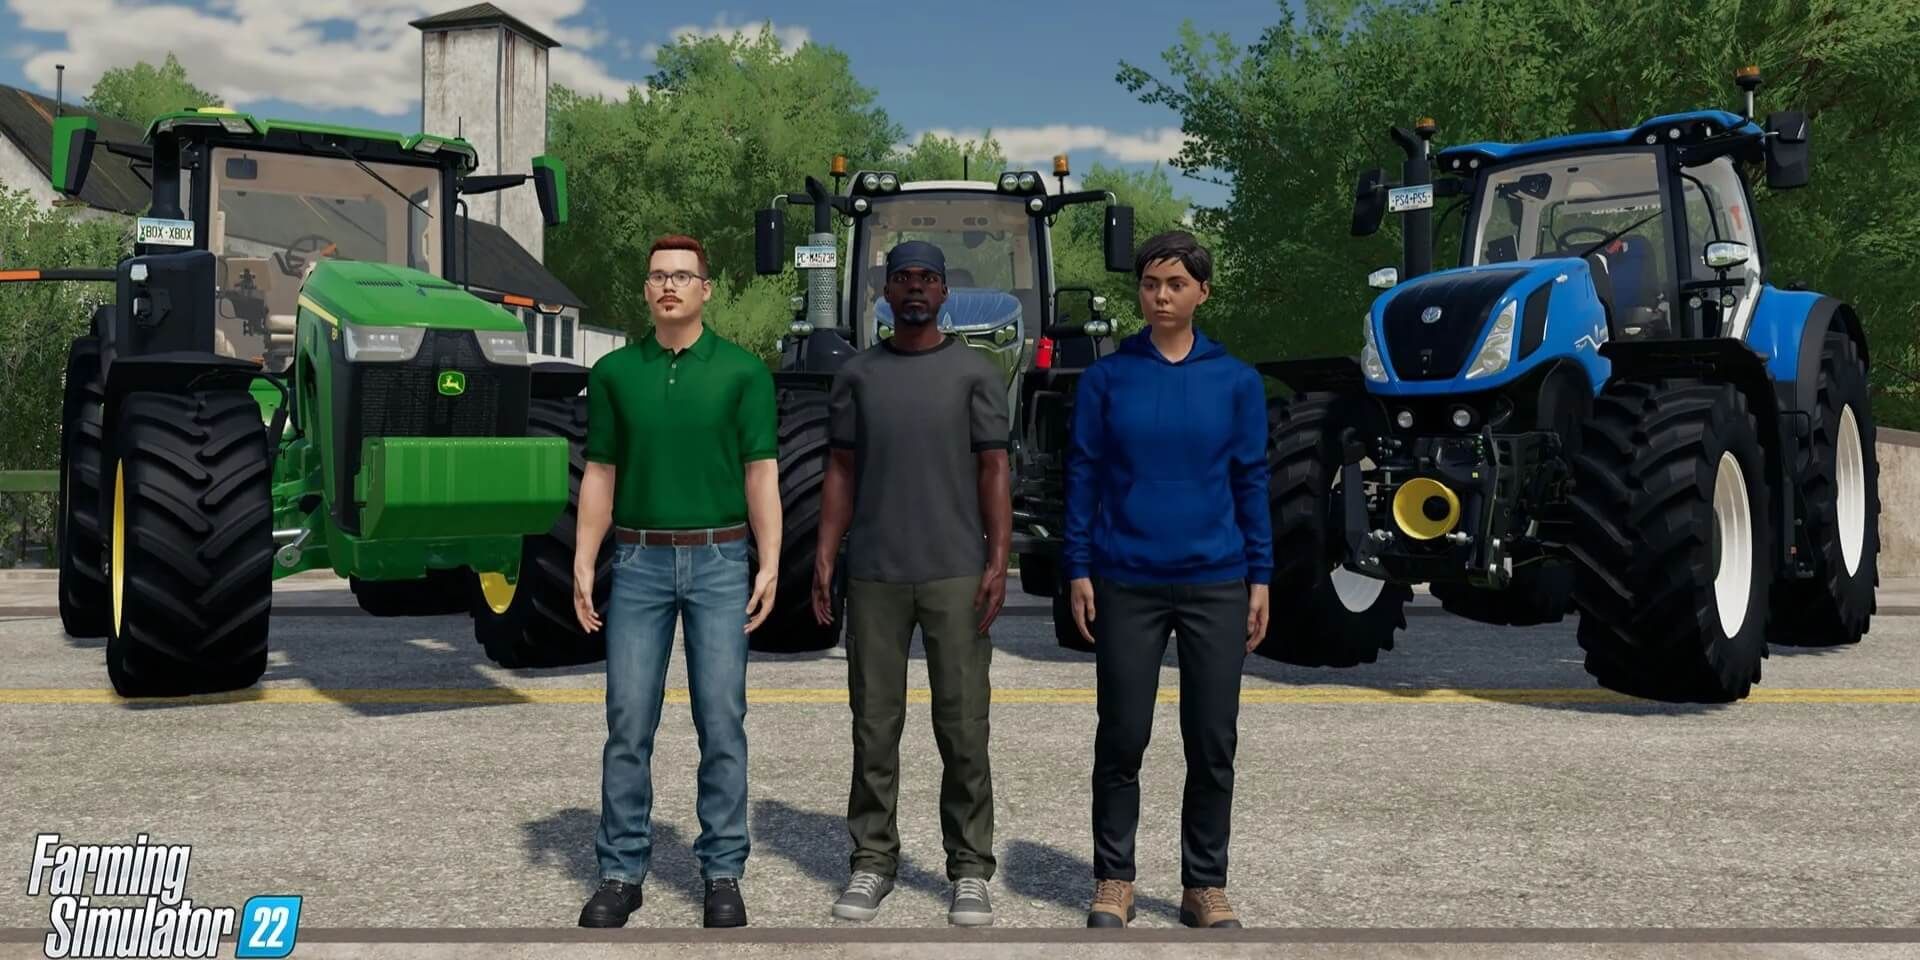 Farming Simulator Characters